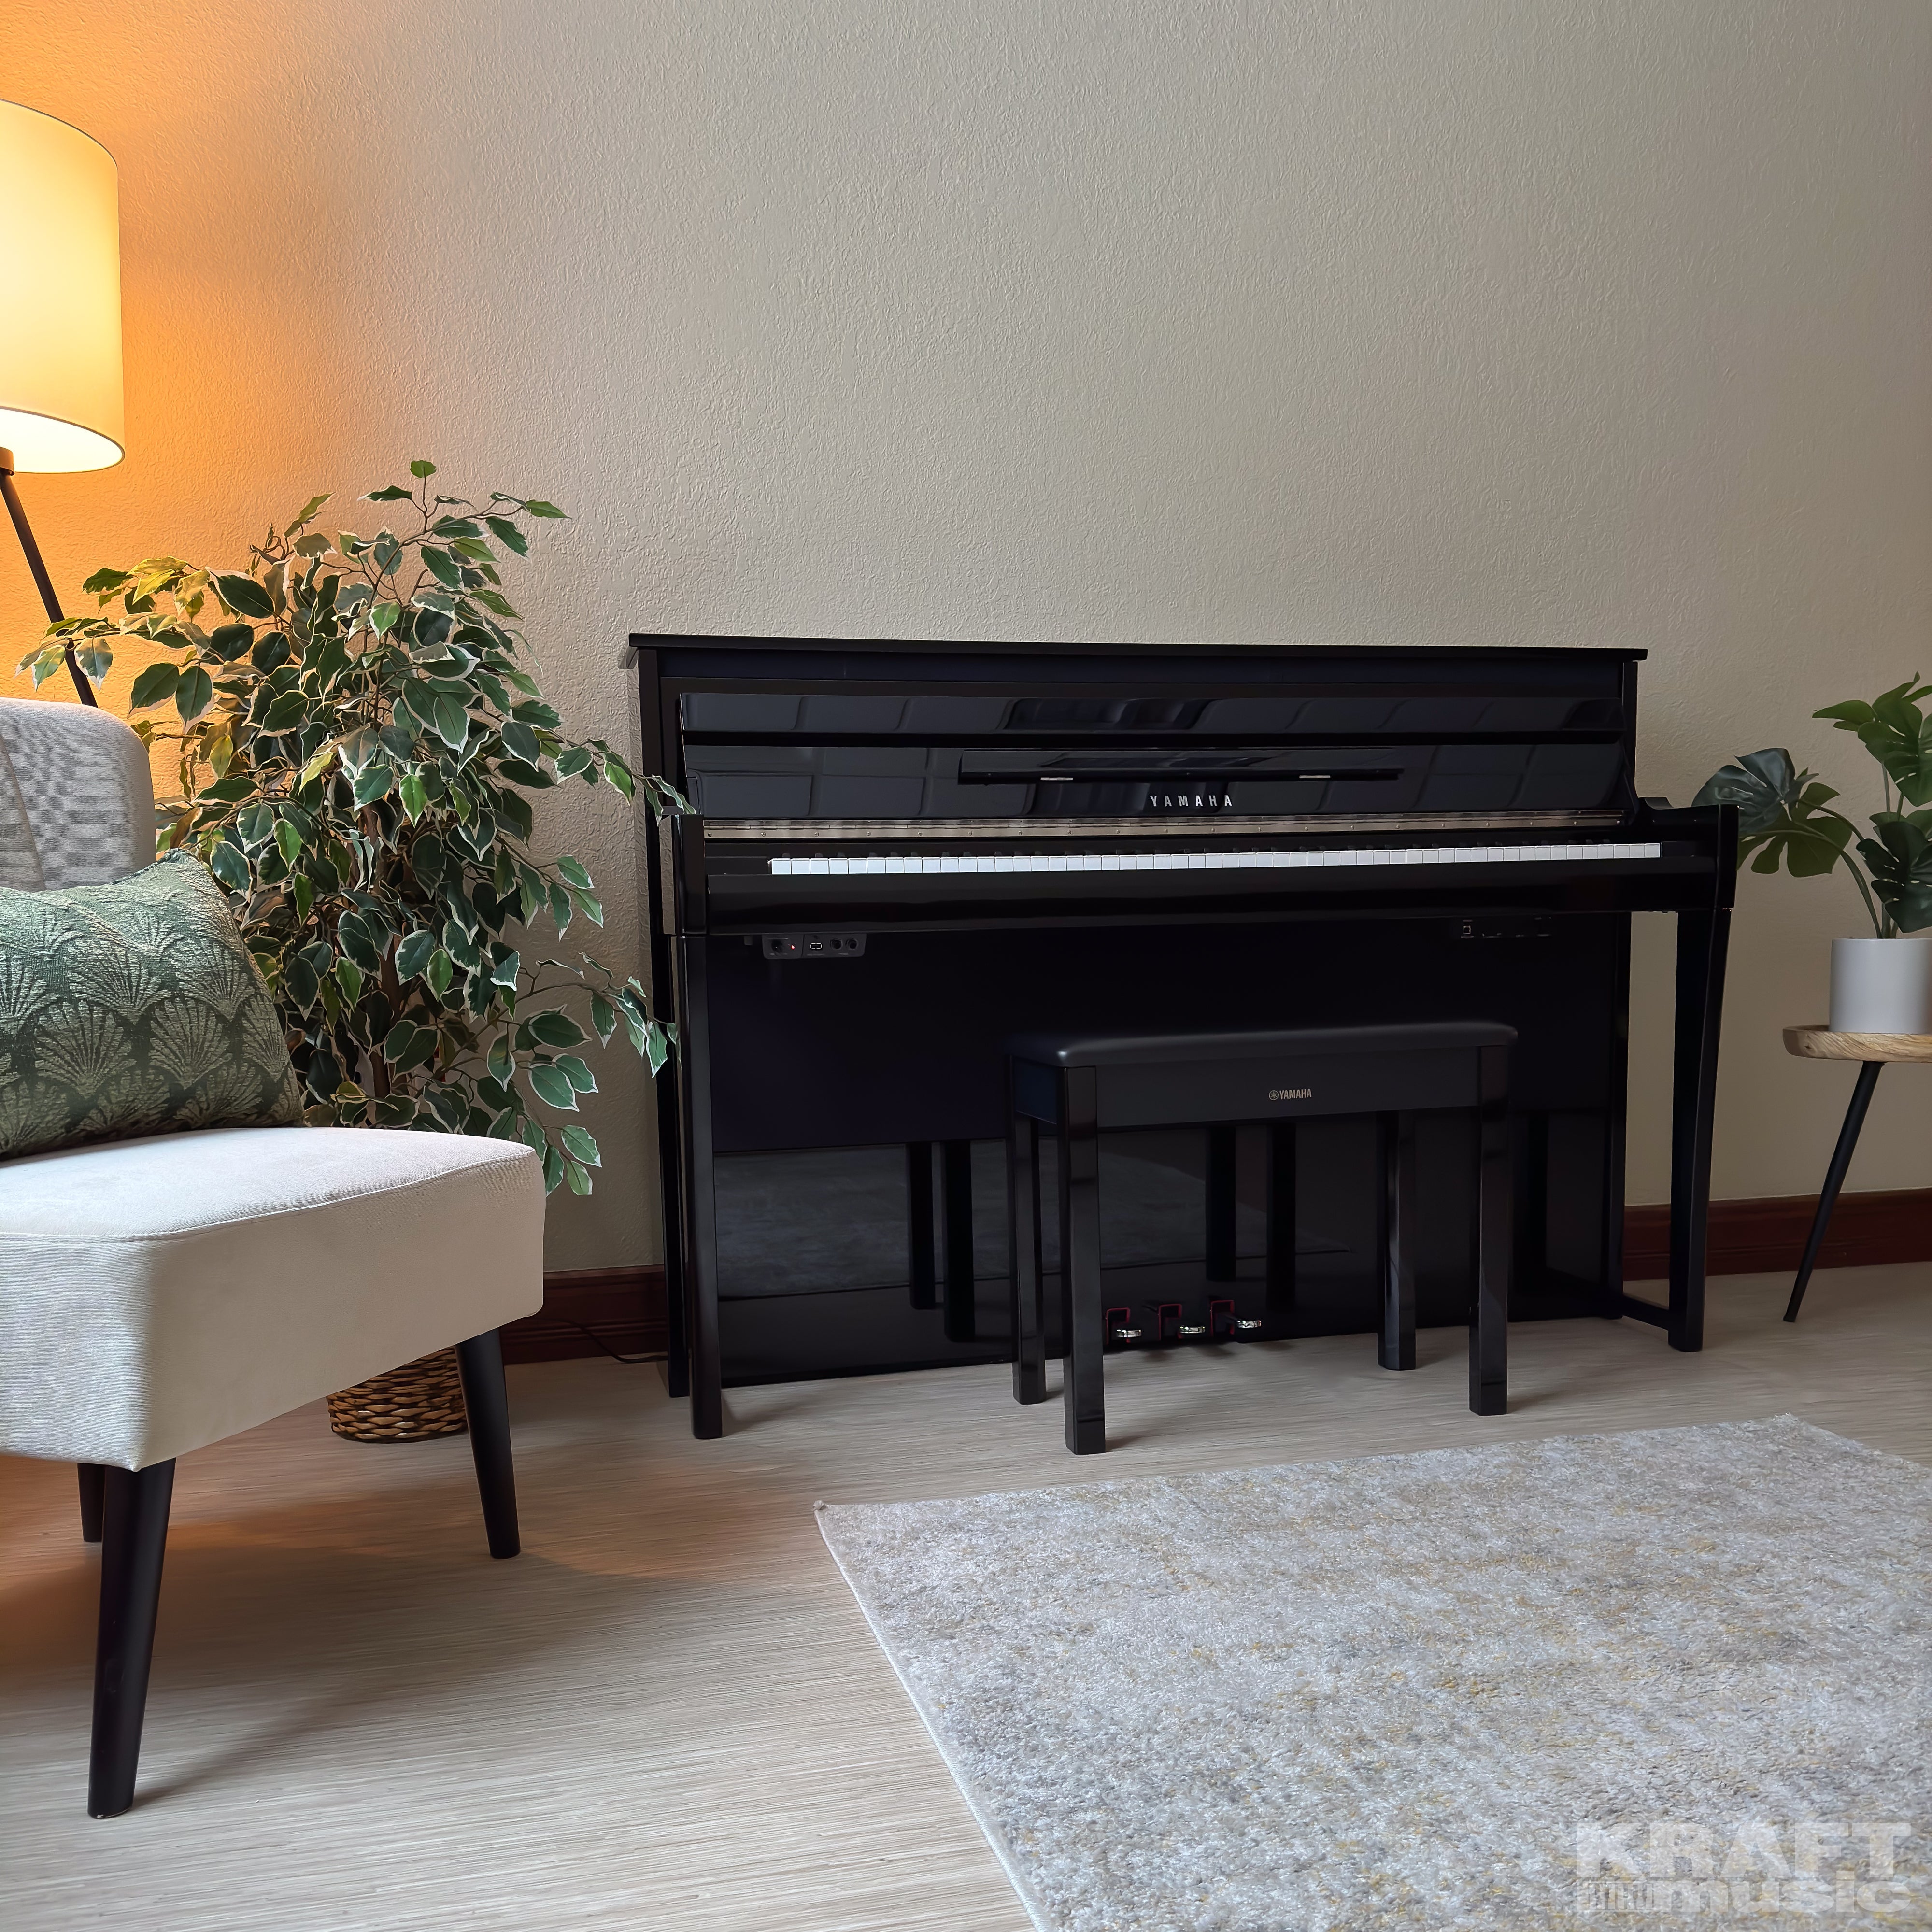 Yamaha AvantGrand NU1XA Hybrid Piano - Polished Ebony - right facing in a stylish living space